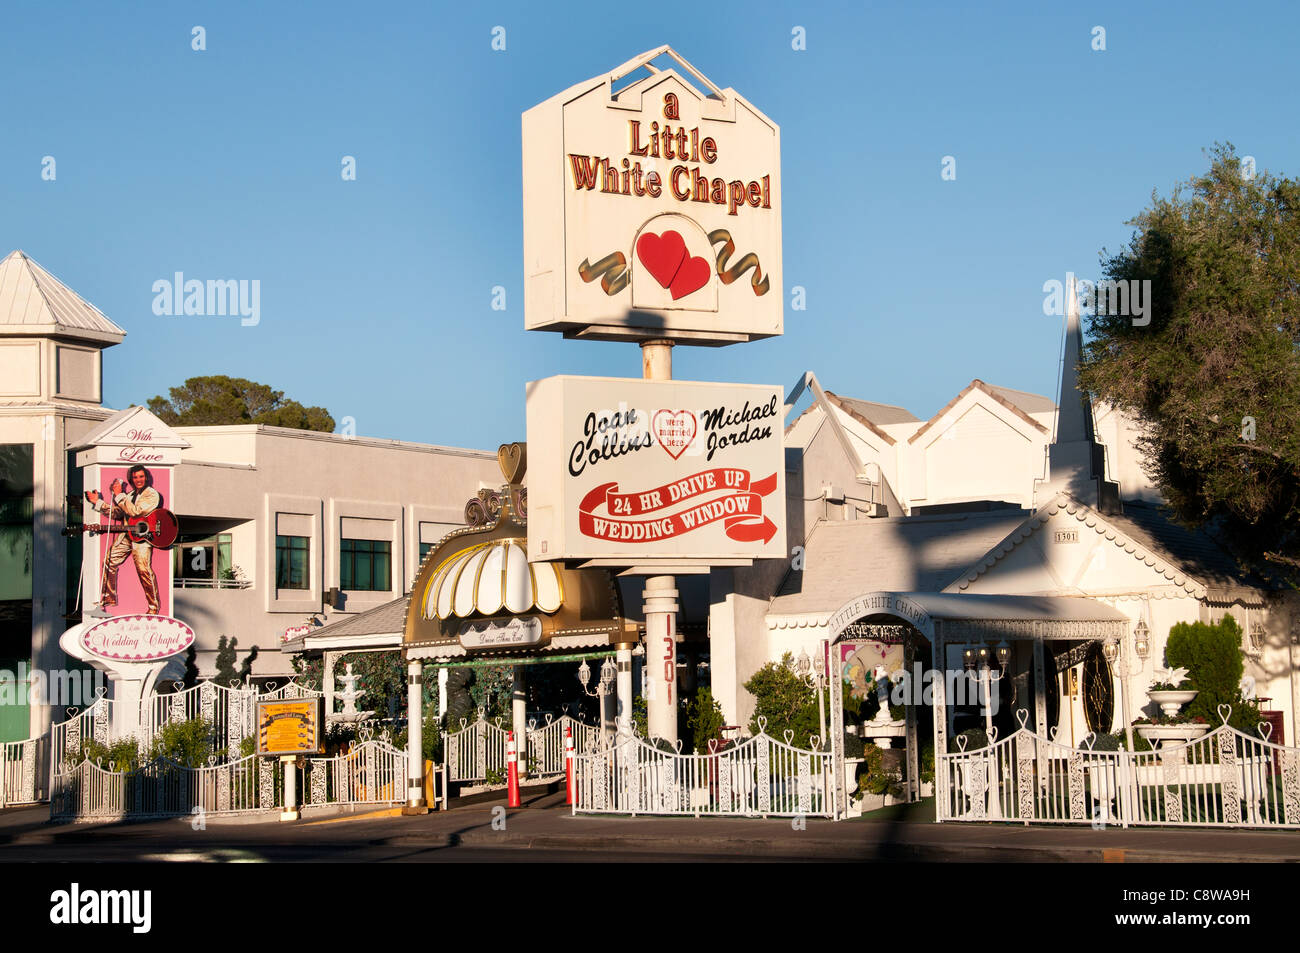 Kleine weiße Kapelle Las Vegas Joan Collins Michel Jordanien Vereinigten Staaten Nevada Hochzeit Stockfoto